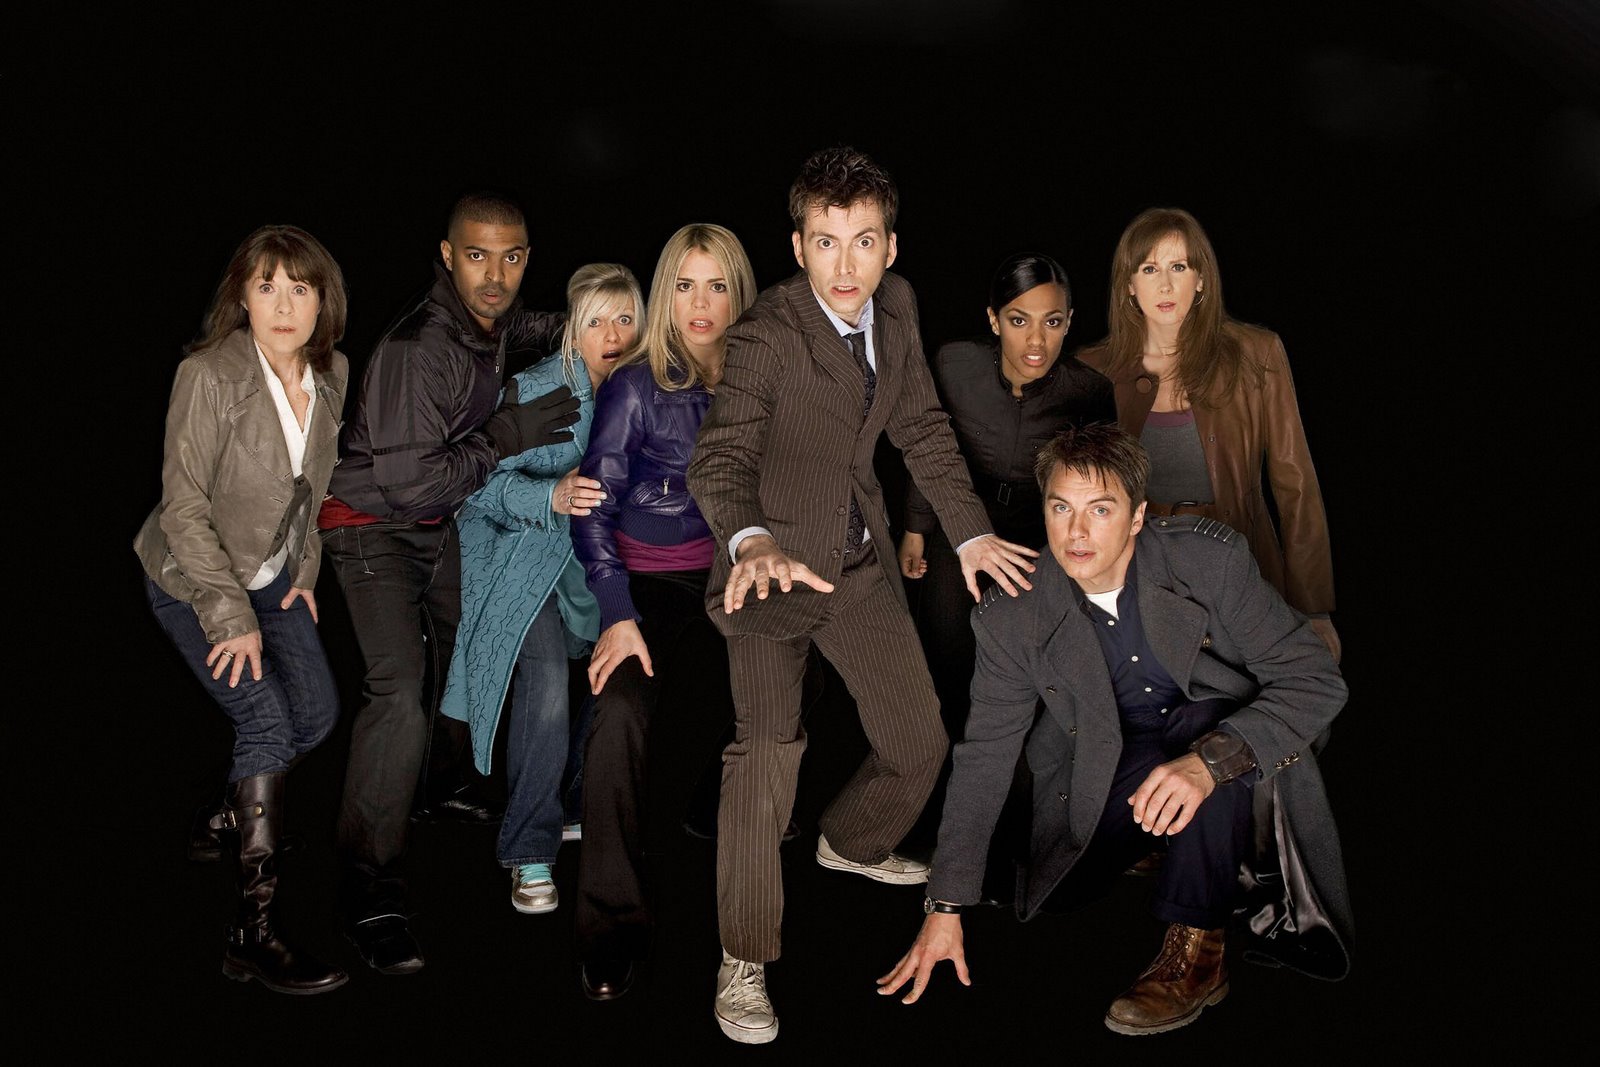 Le 10ème Docteur (David Tennant) et ses compagnons surnommés les Enfants du Temps par les Daleks